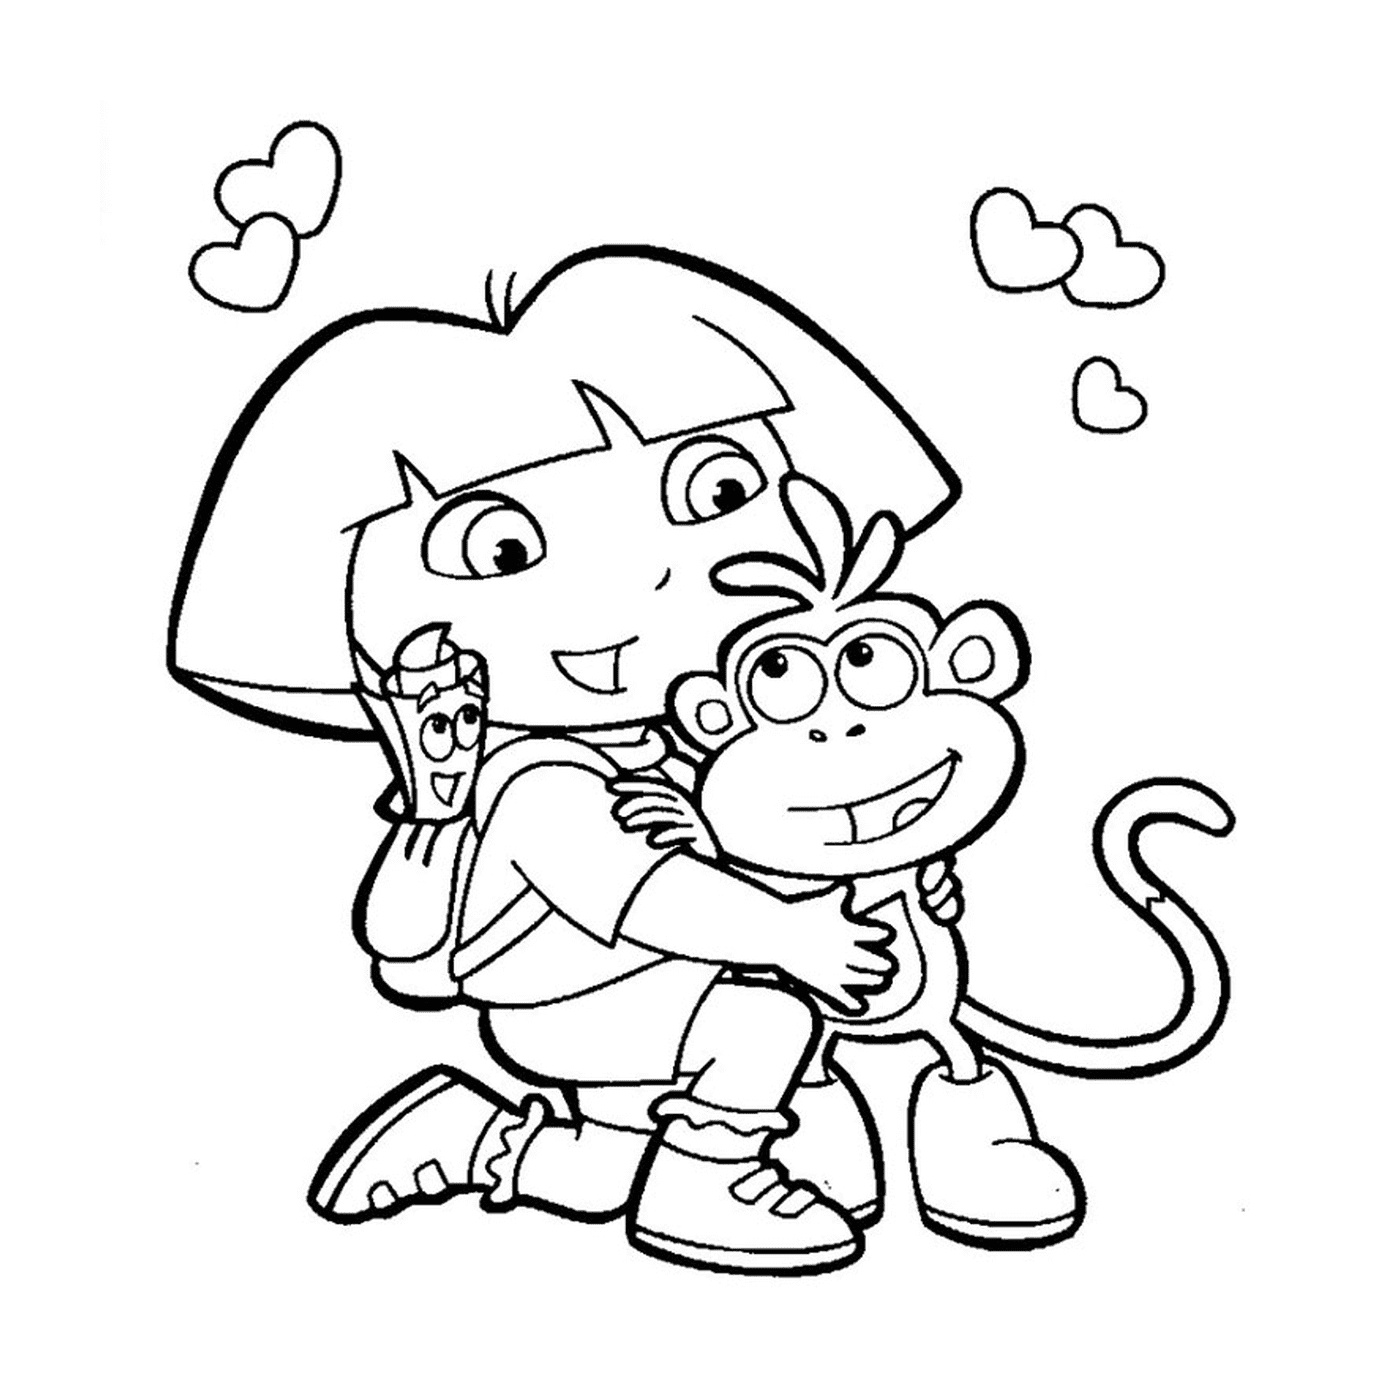   Dora tient un singe avec affection 